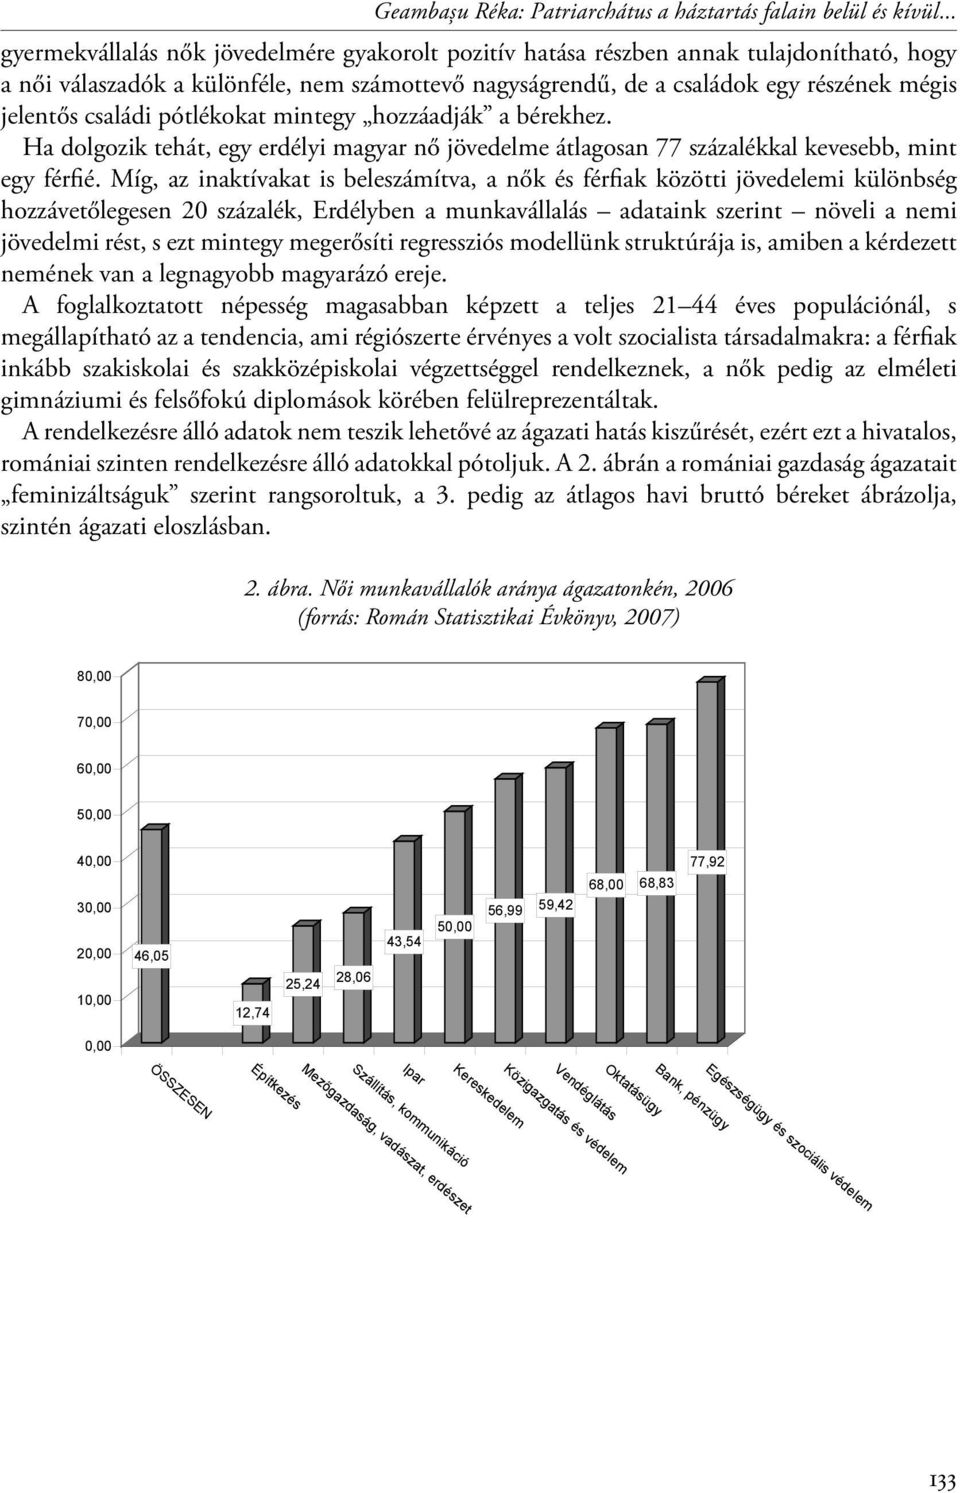 családi pótlékokat mintegy hozzáadják a bérekhez. Ha dolgozik tehát, egy erdélyi magyar nő jövedelme átlagosan 77 százalékkal kevesebb, mint egy férfié.